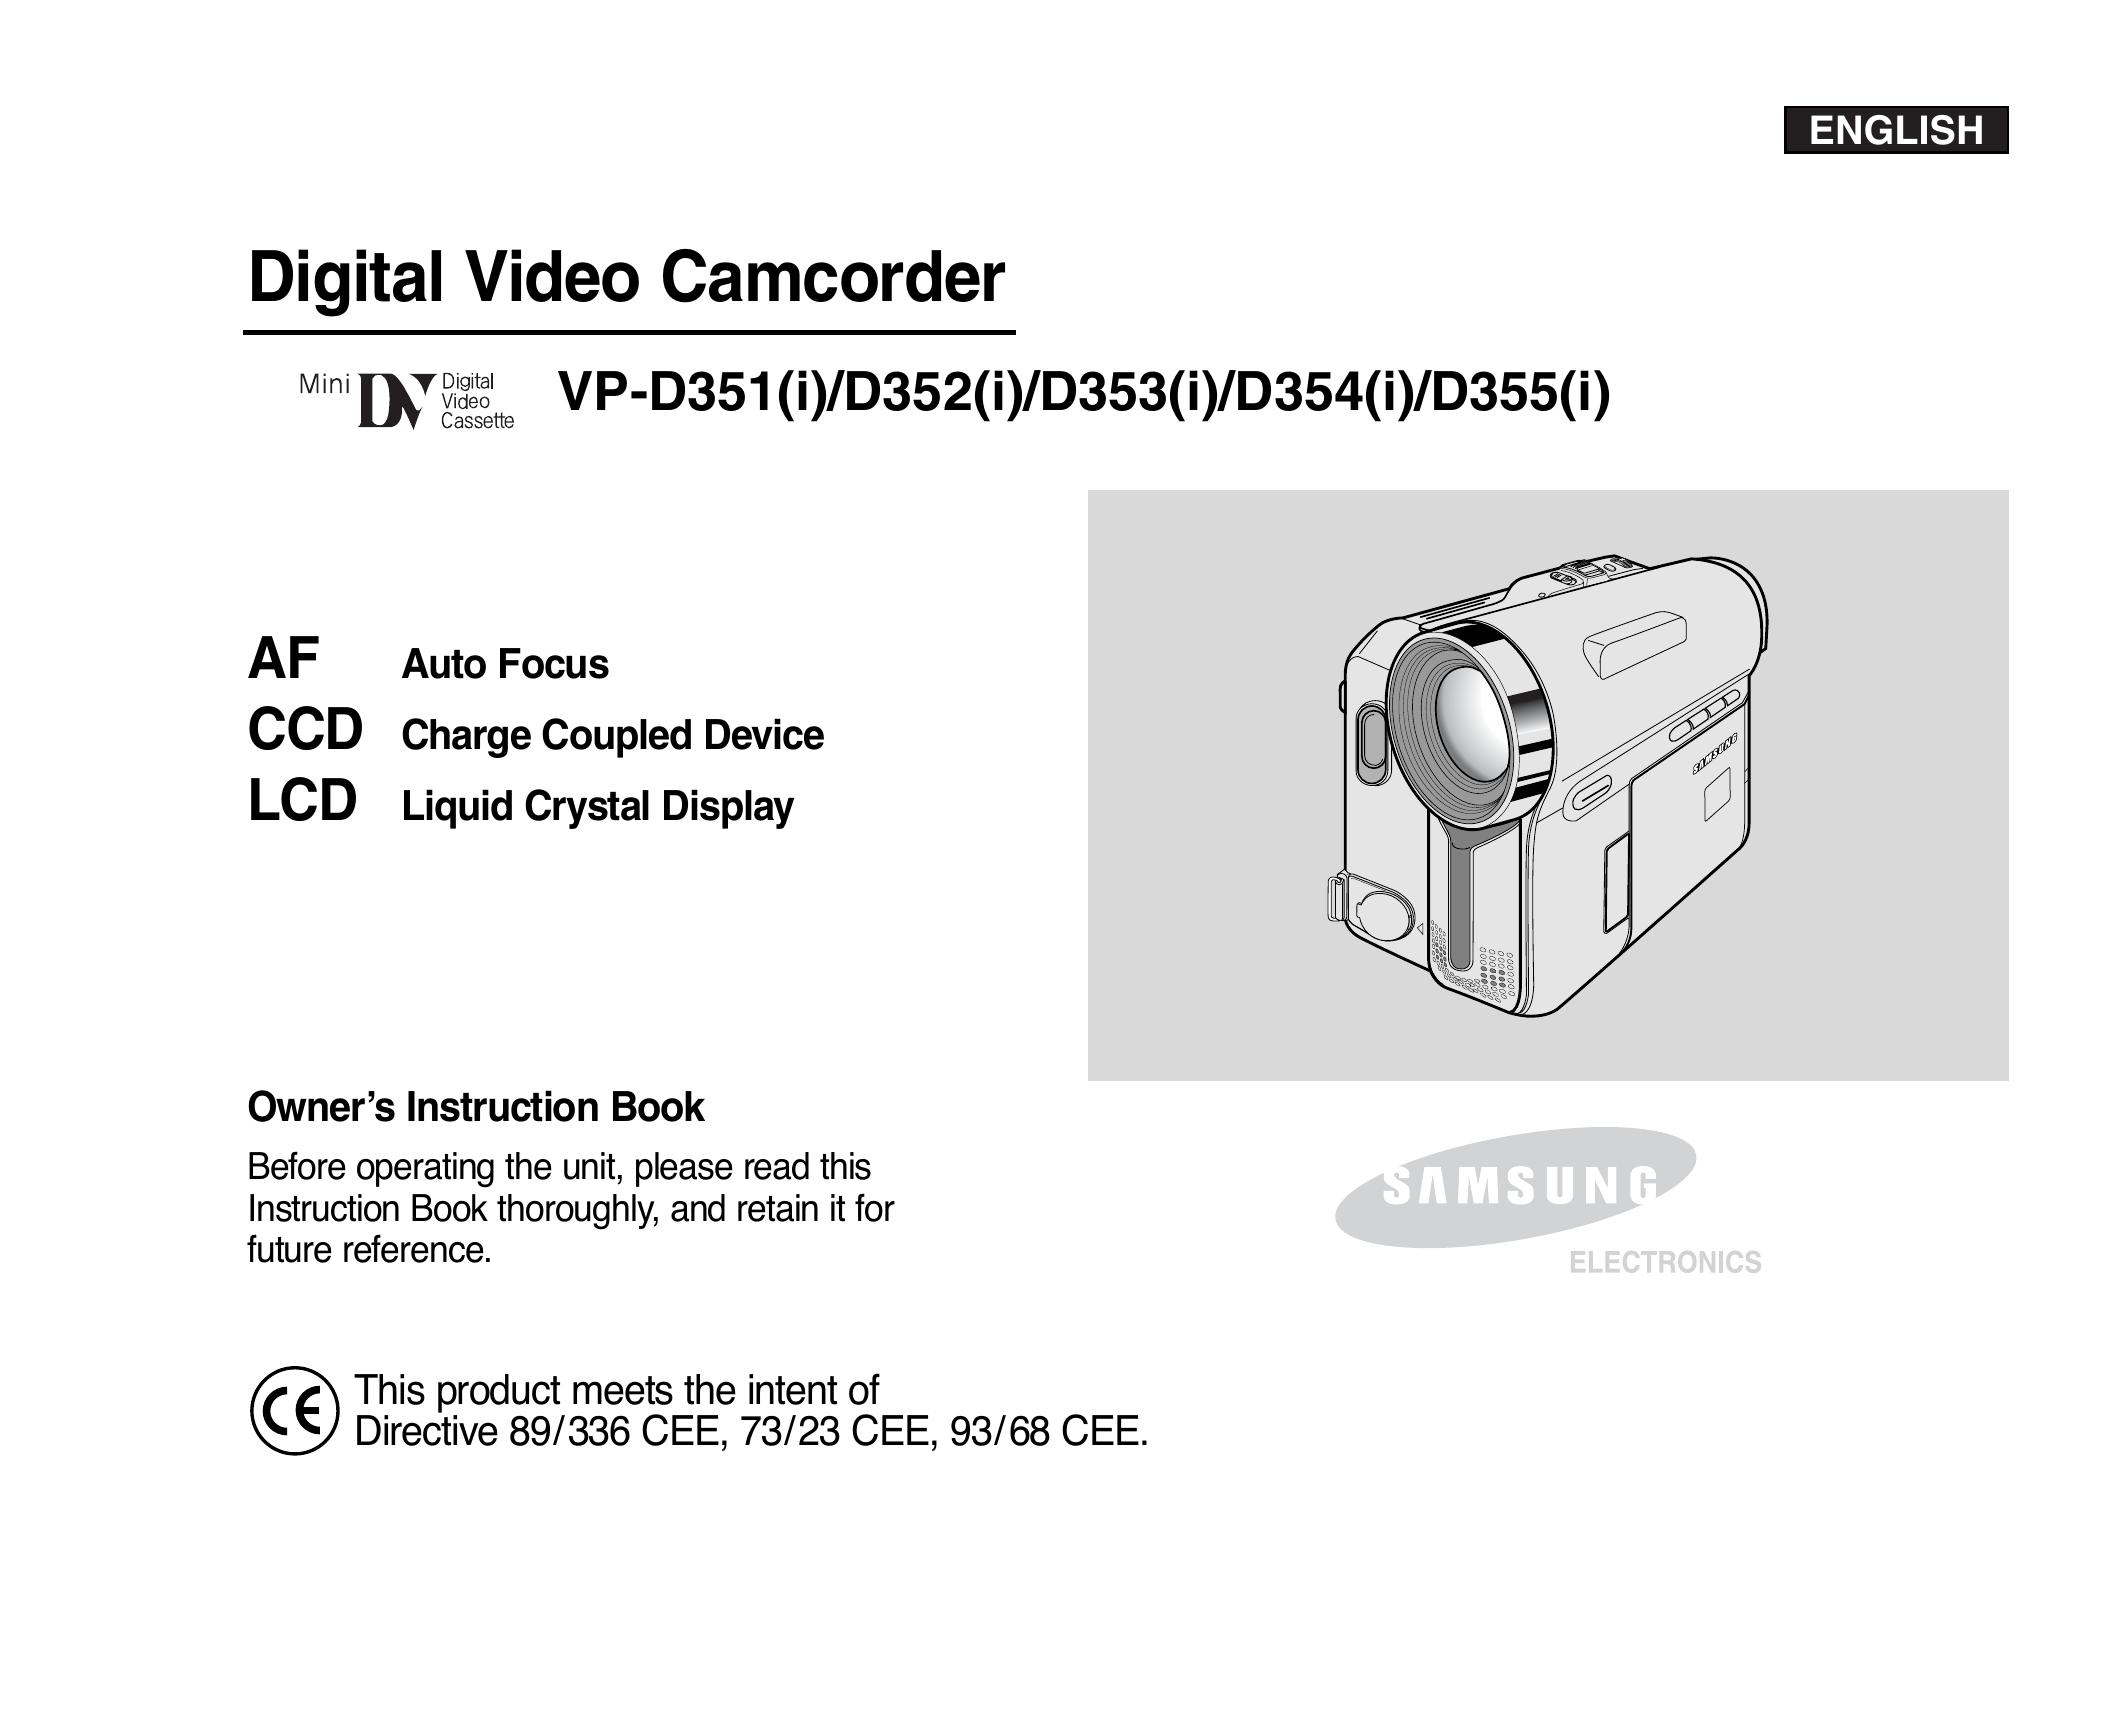 Samsung D352(i) Camcorder User Manual